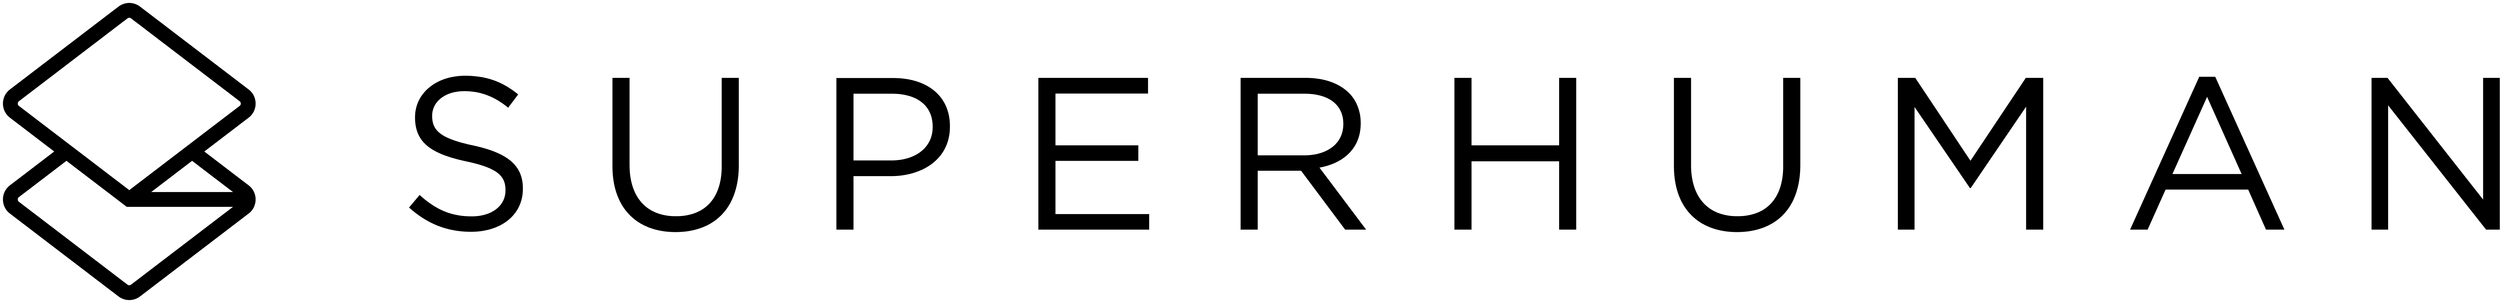 Logo-Full-Black (1).png